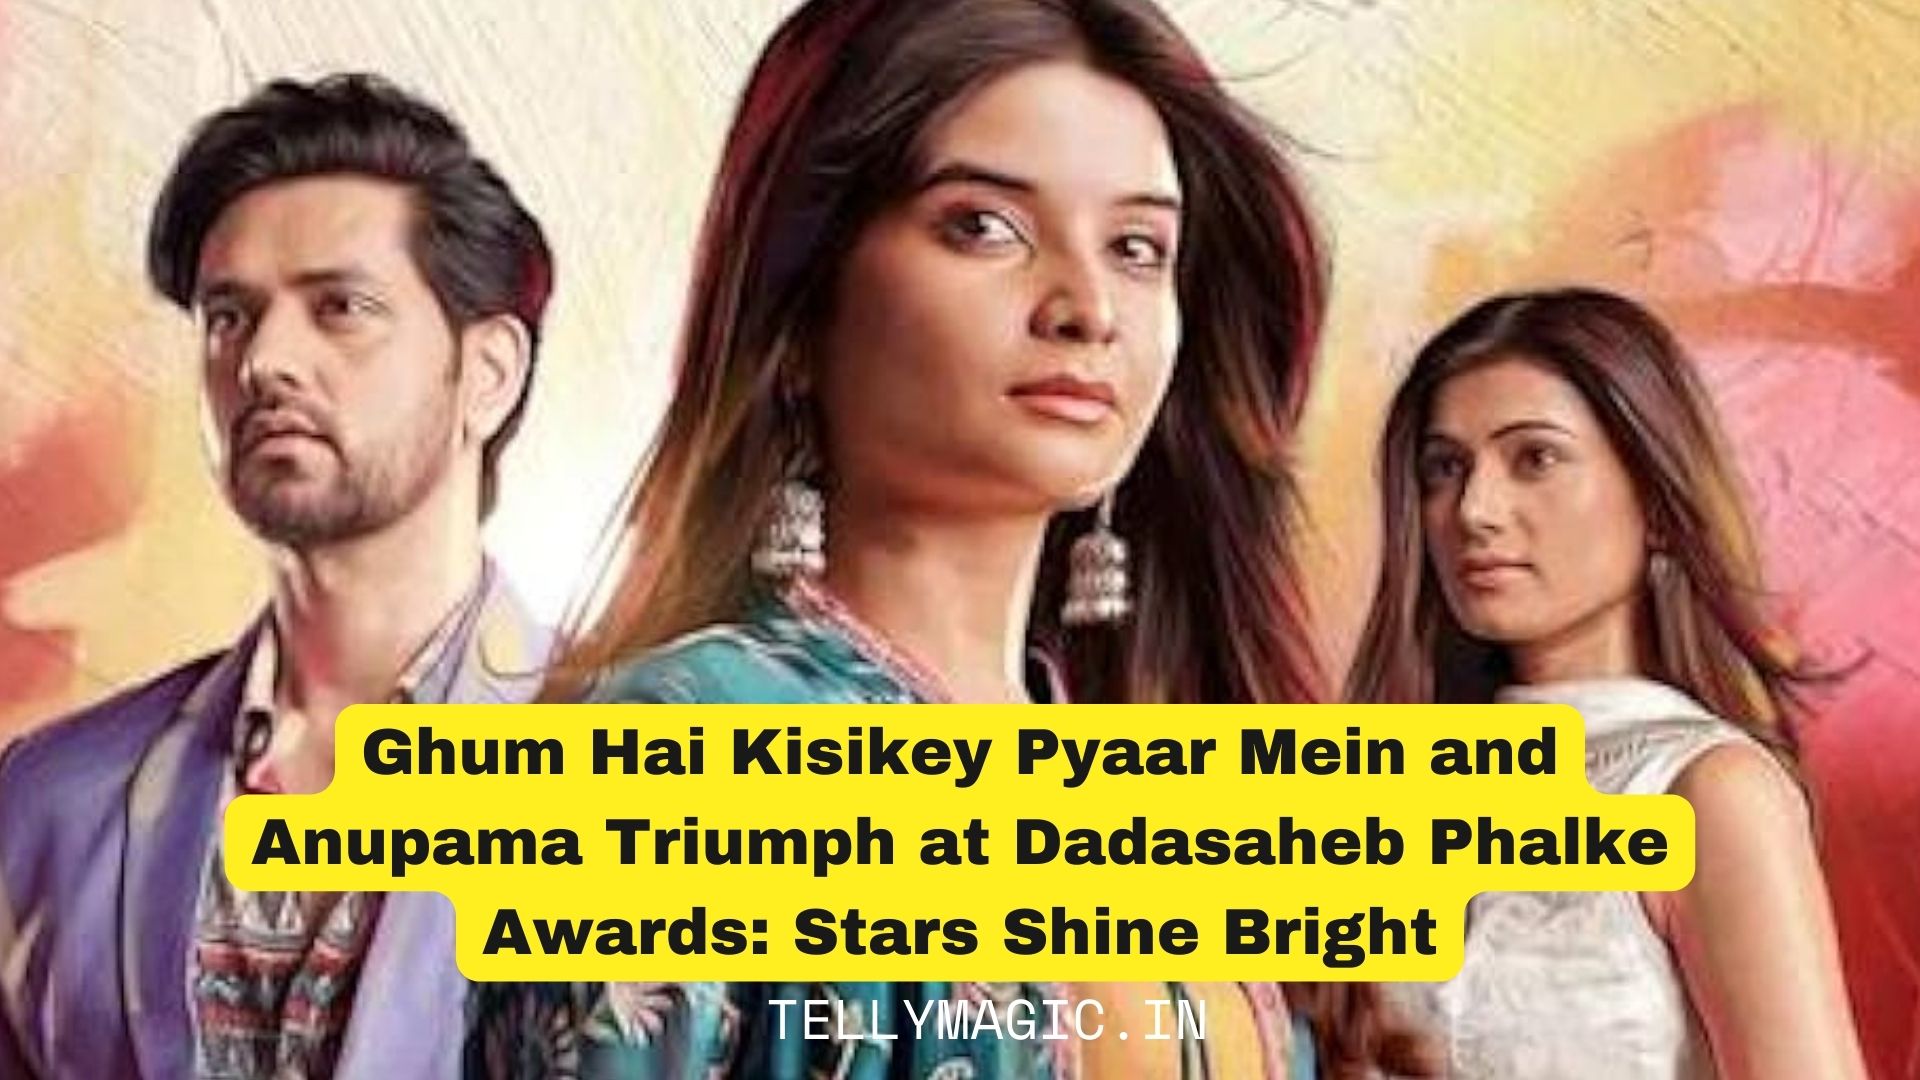 Ghum Hai Kisikey Pyaar Mein and Anupama Triumph at Dadasaheb Phalke Awards: Stars Shine Bright